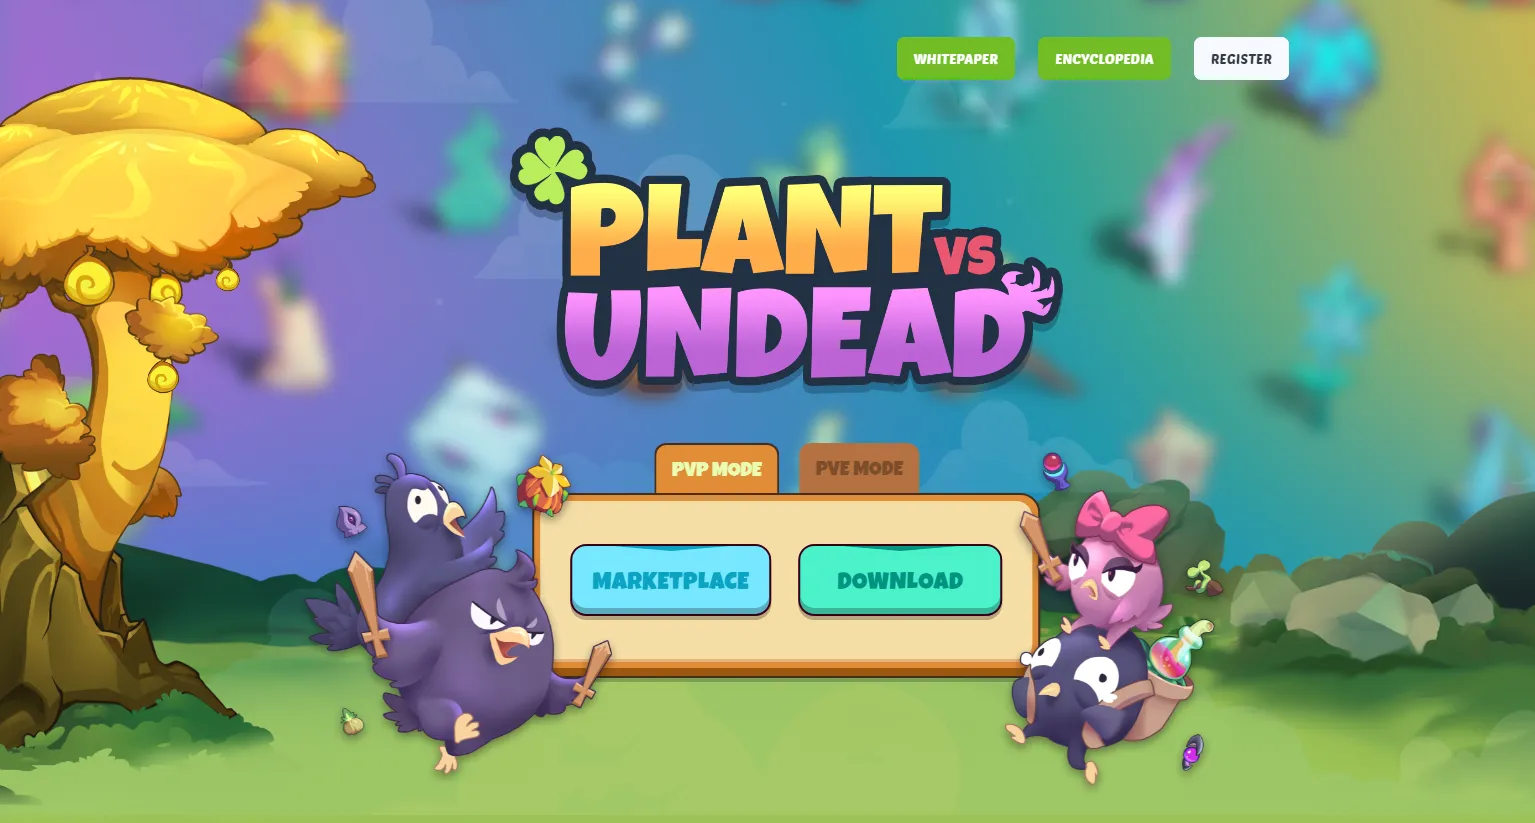 plant vs undead